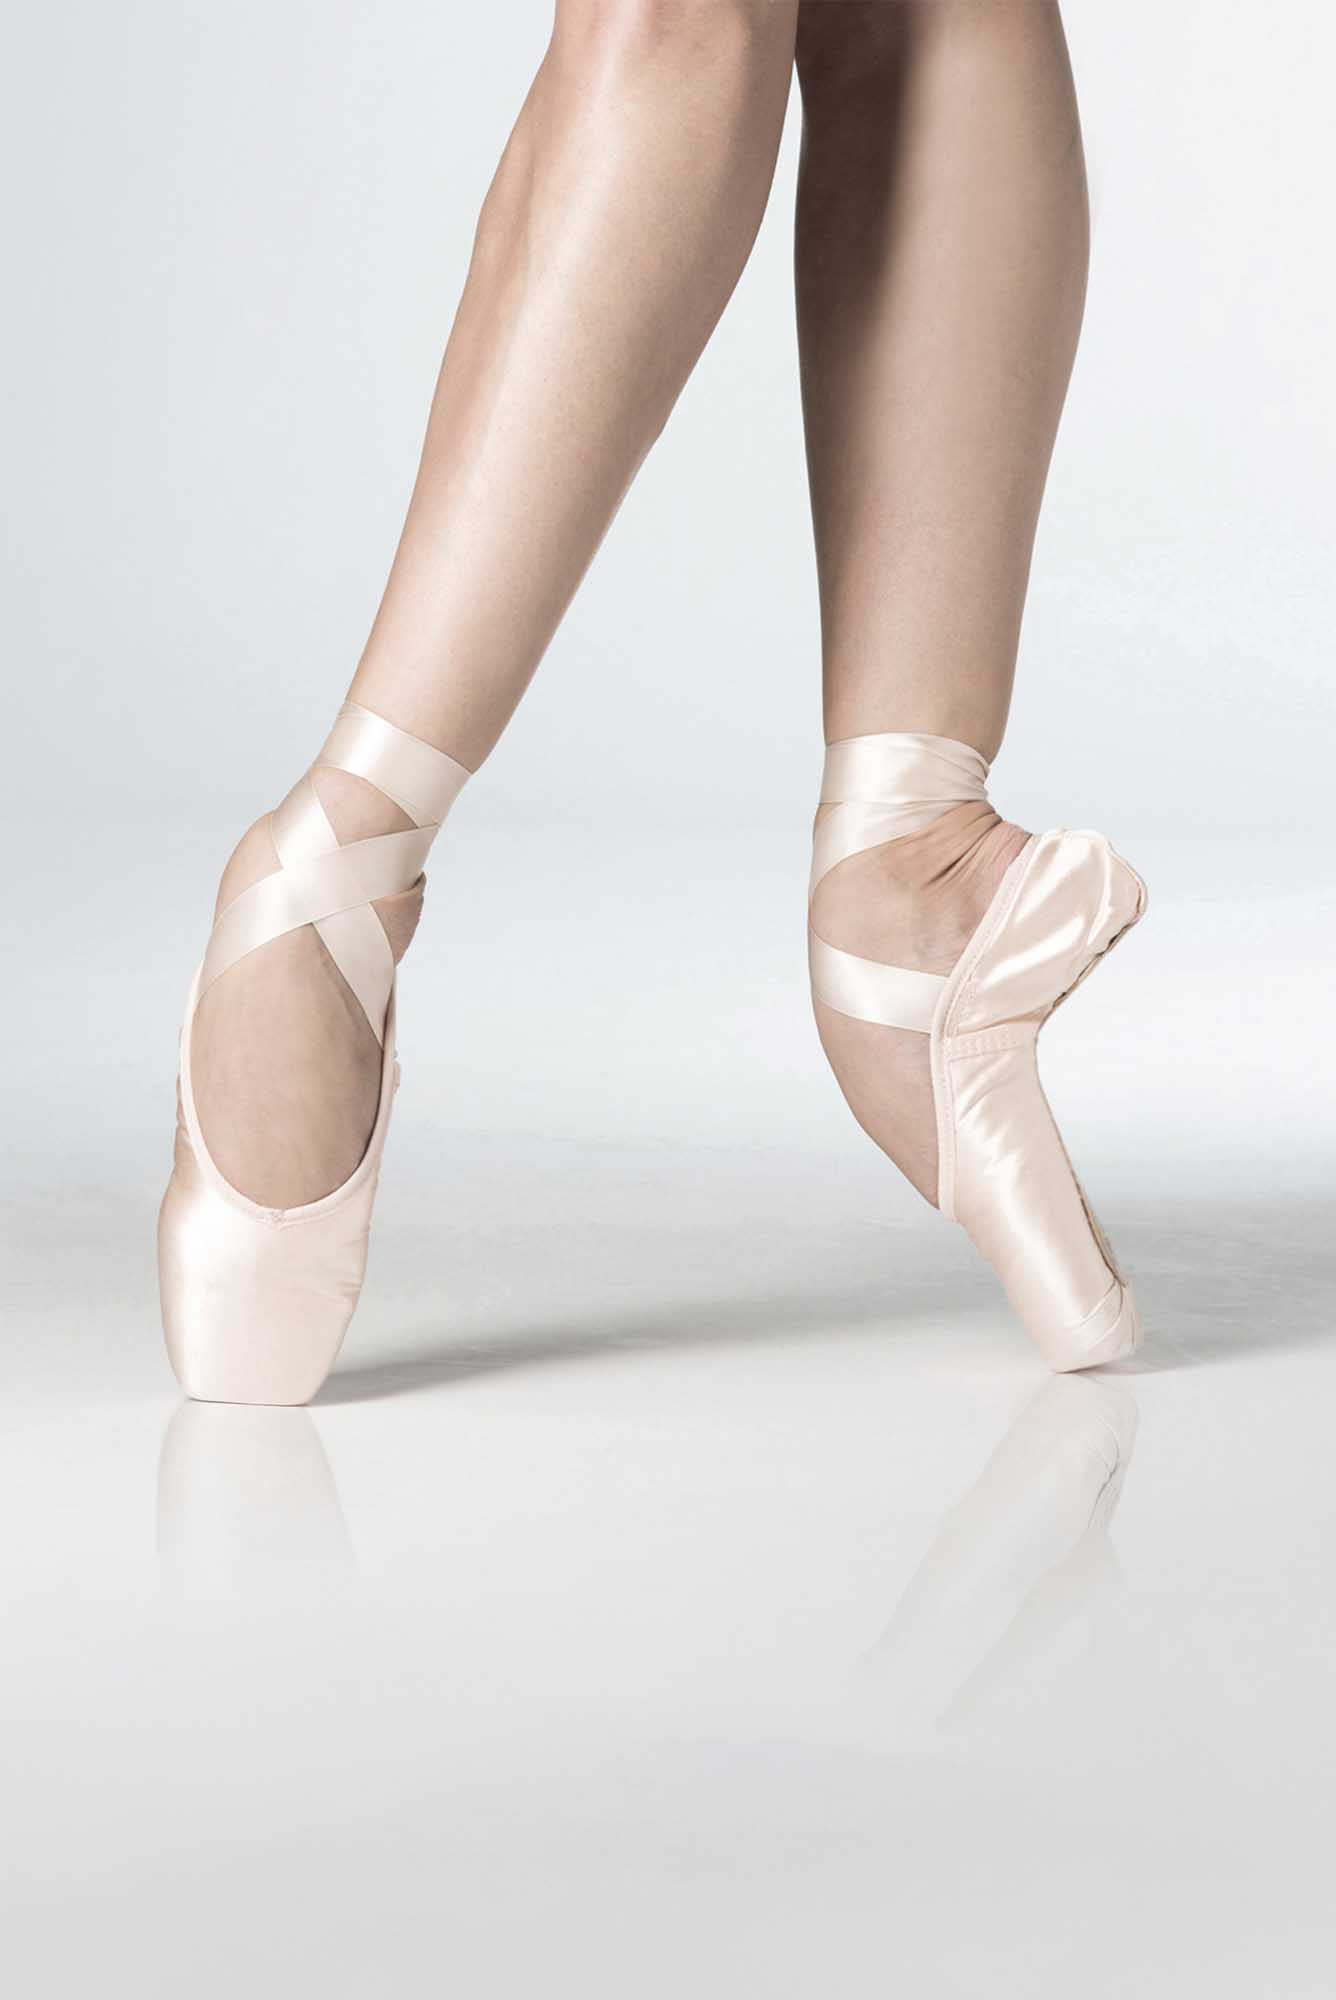 LA POINTE SQUARE EXTRA SOFT - Ballet shoes